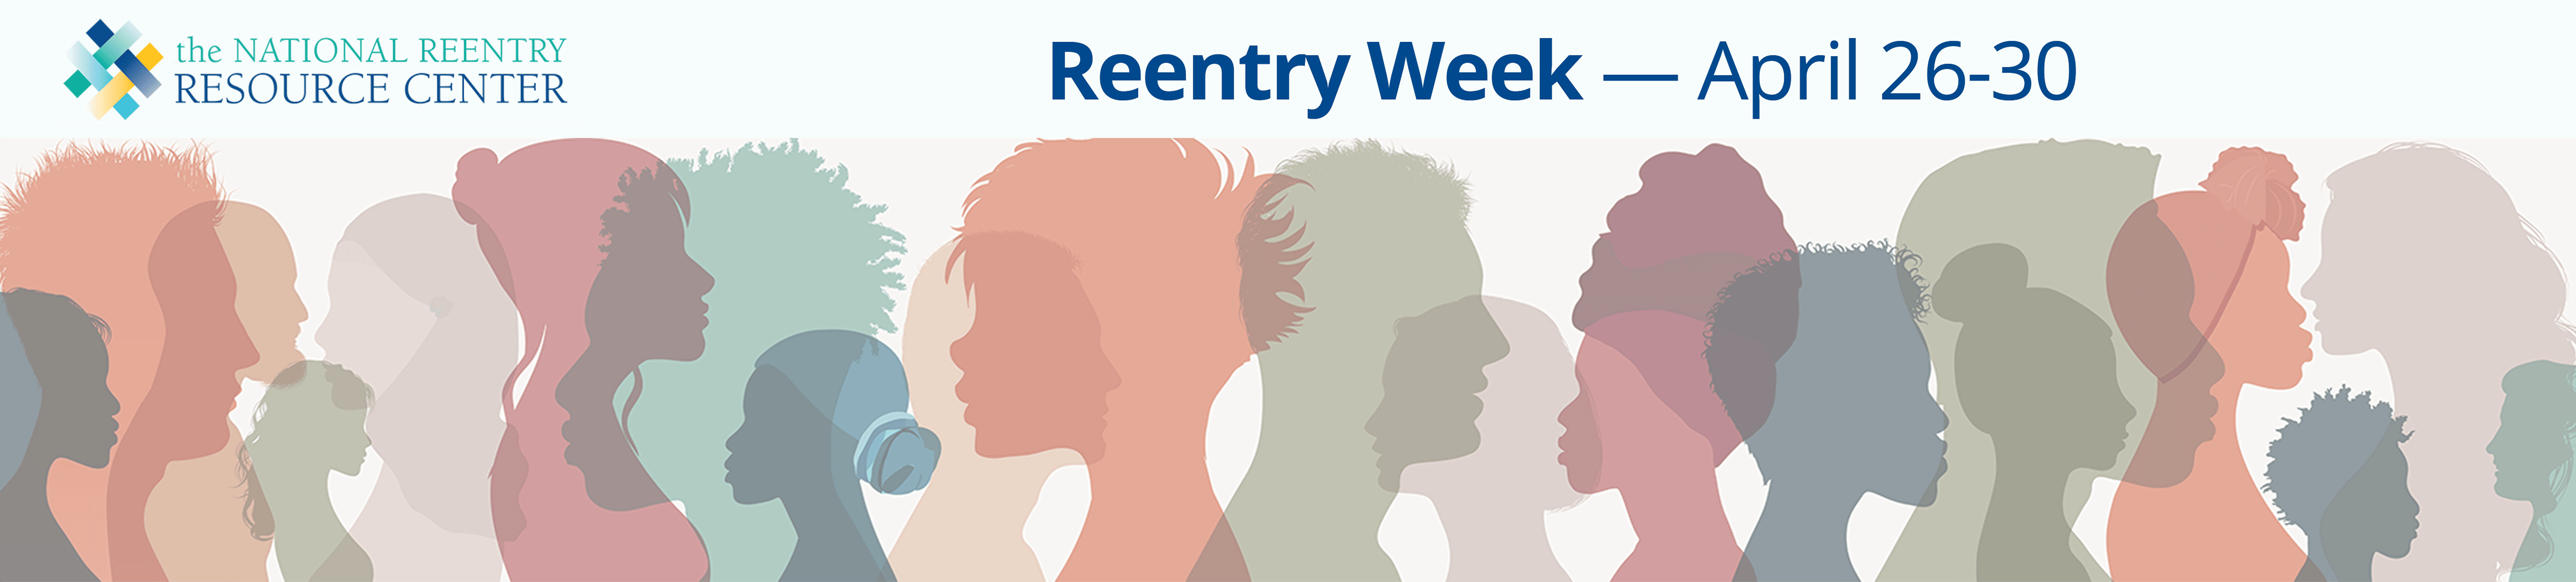 Reentry Week 2021 banner image